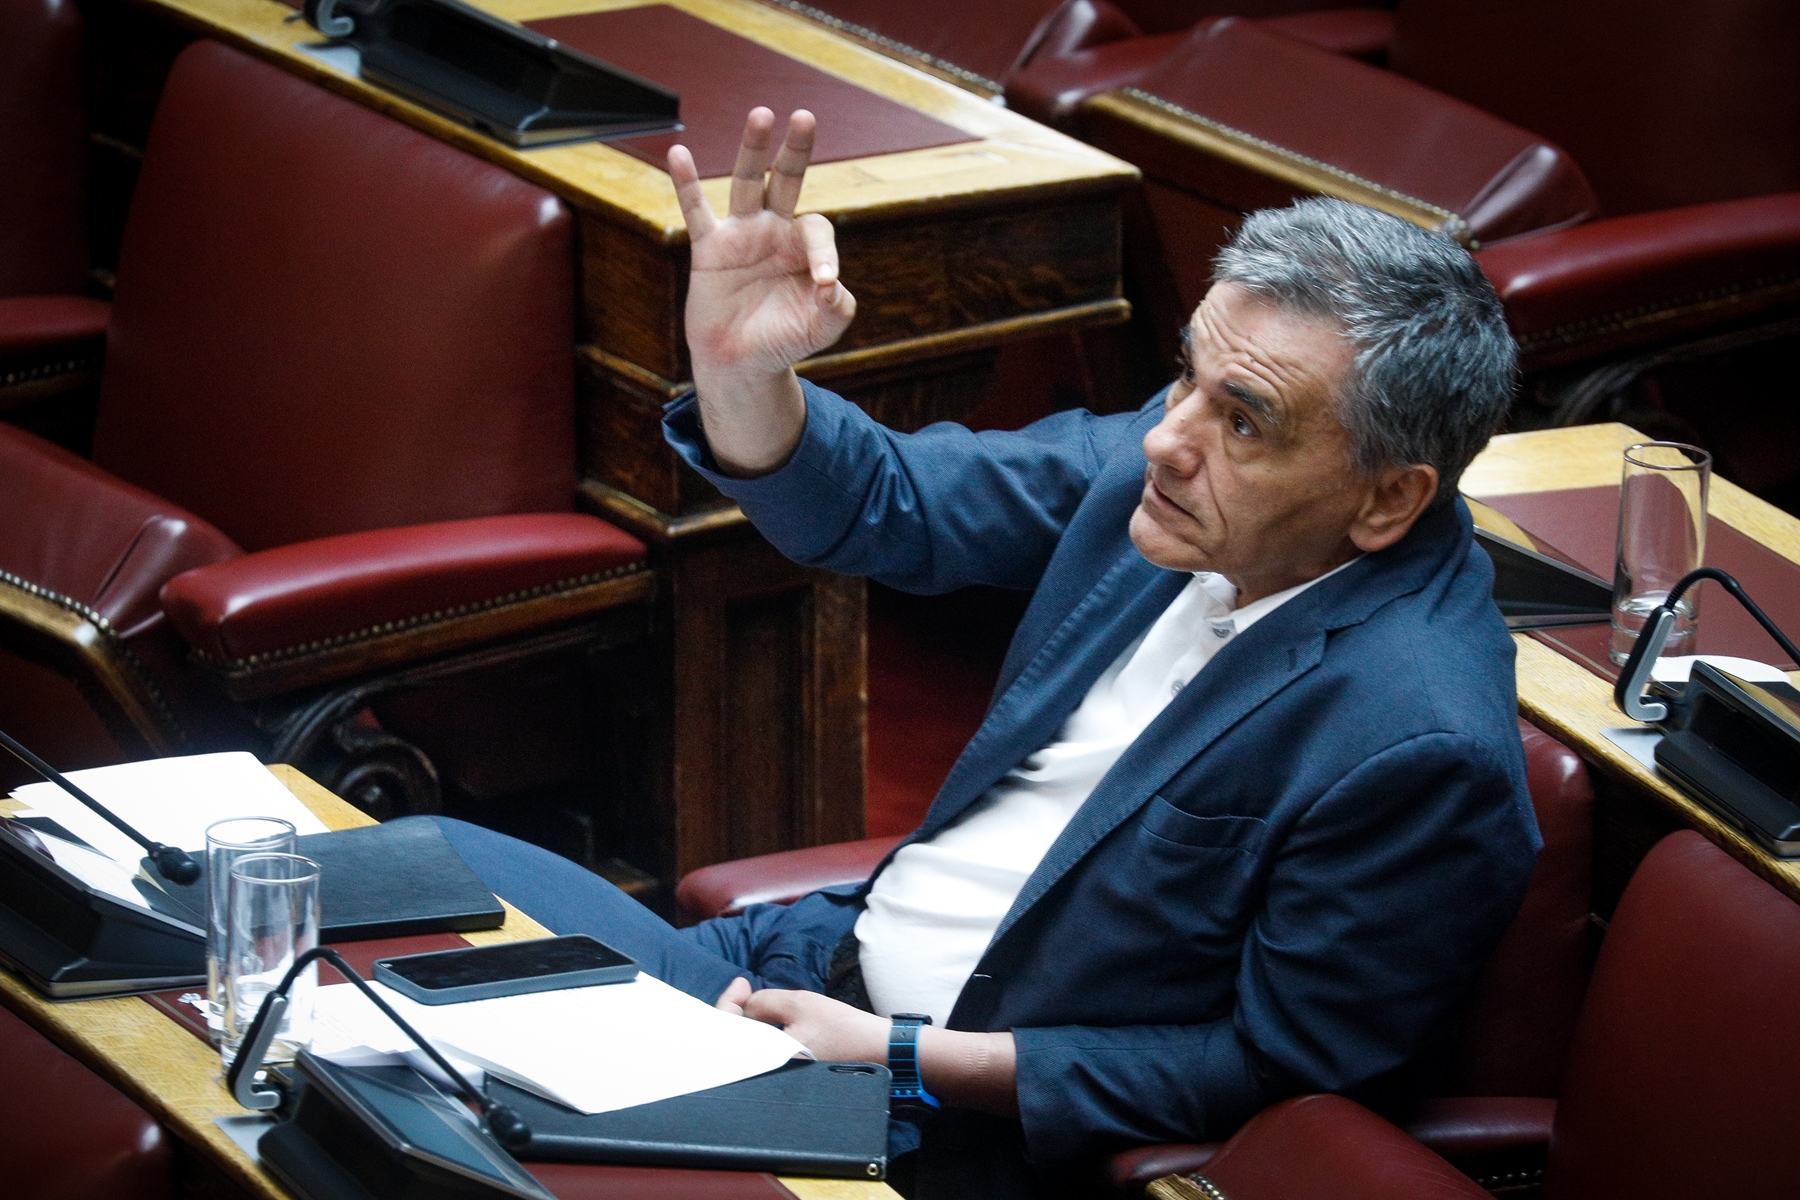 600 ευρώ επίδομα – ΣΥΡΙΖΑ: Μετά τις αντιδράσεις, καταθέτει τροπολογία για επέκταση